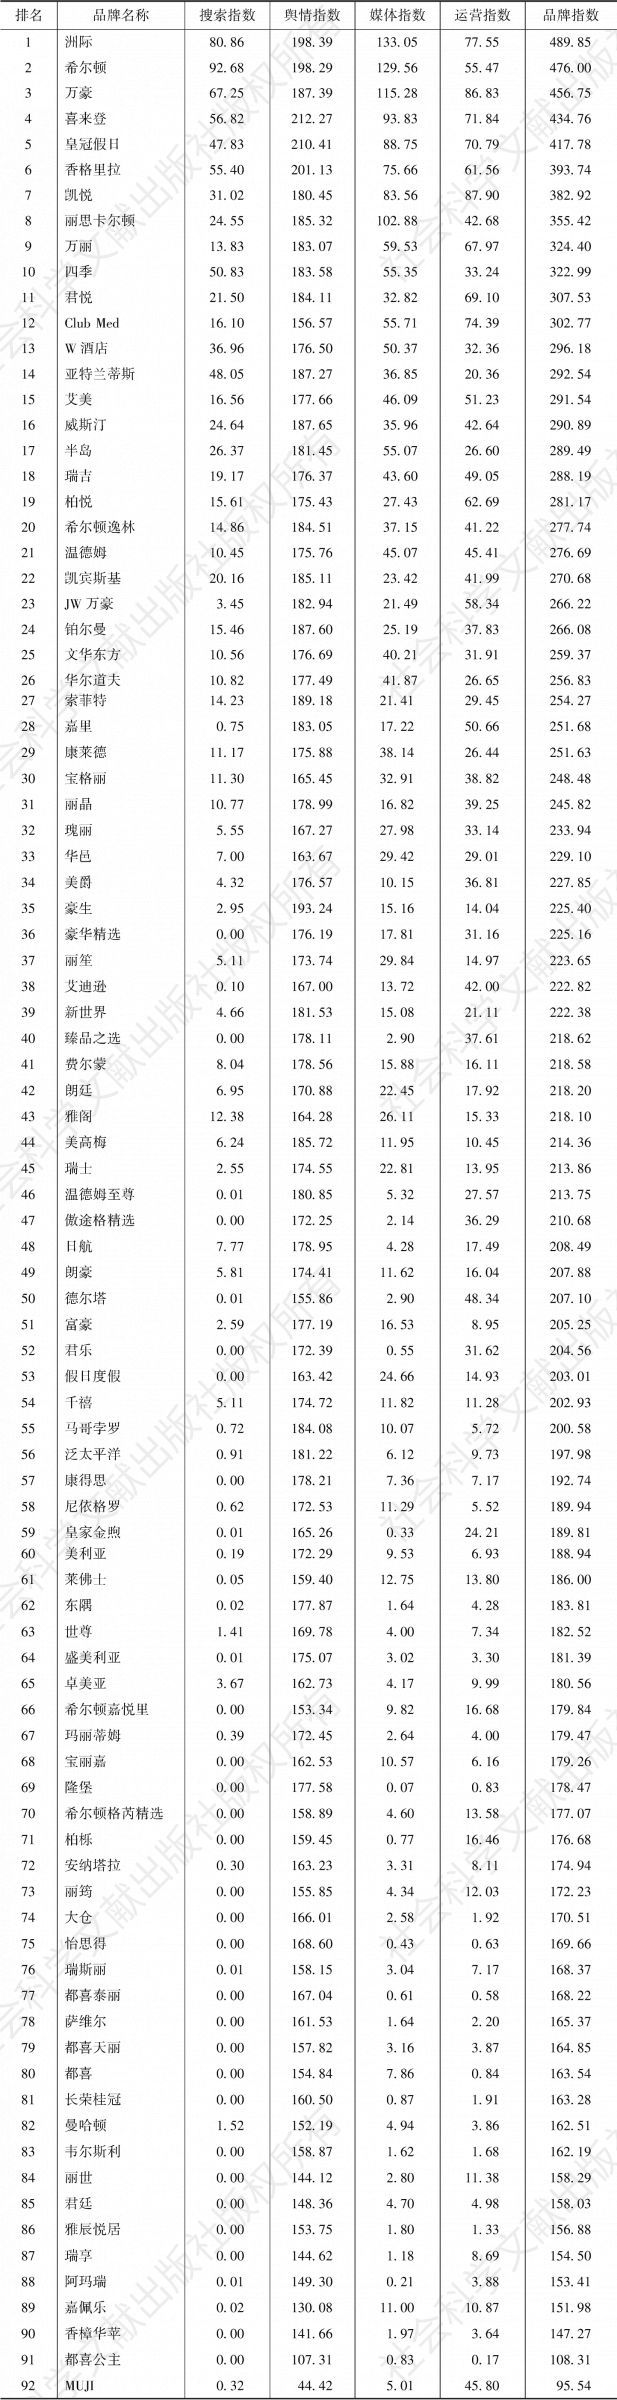 表1 2019年度中国旅游住宿业国际高端酒店品牌影响力完整榜单